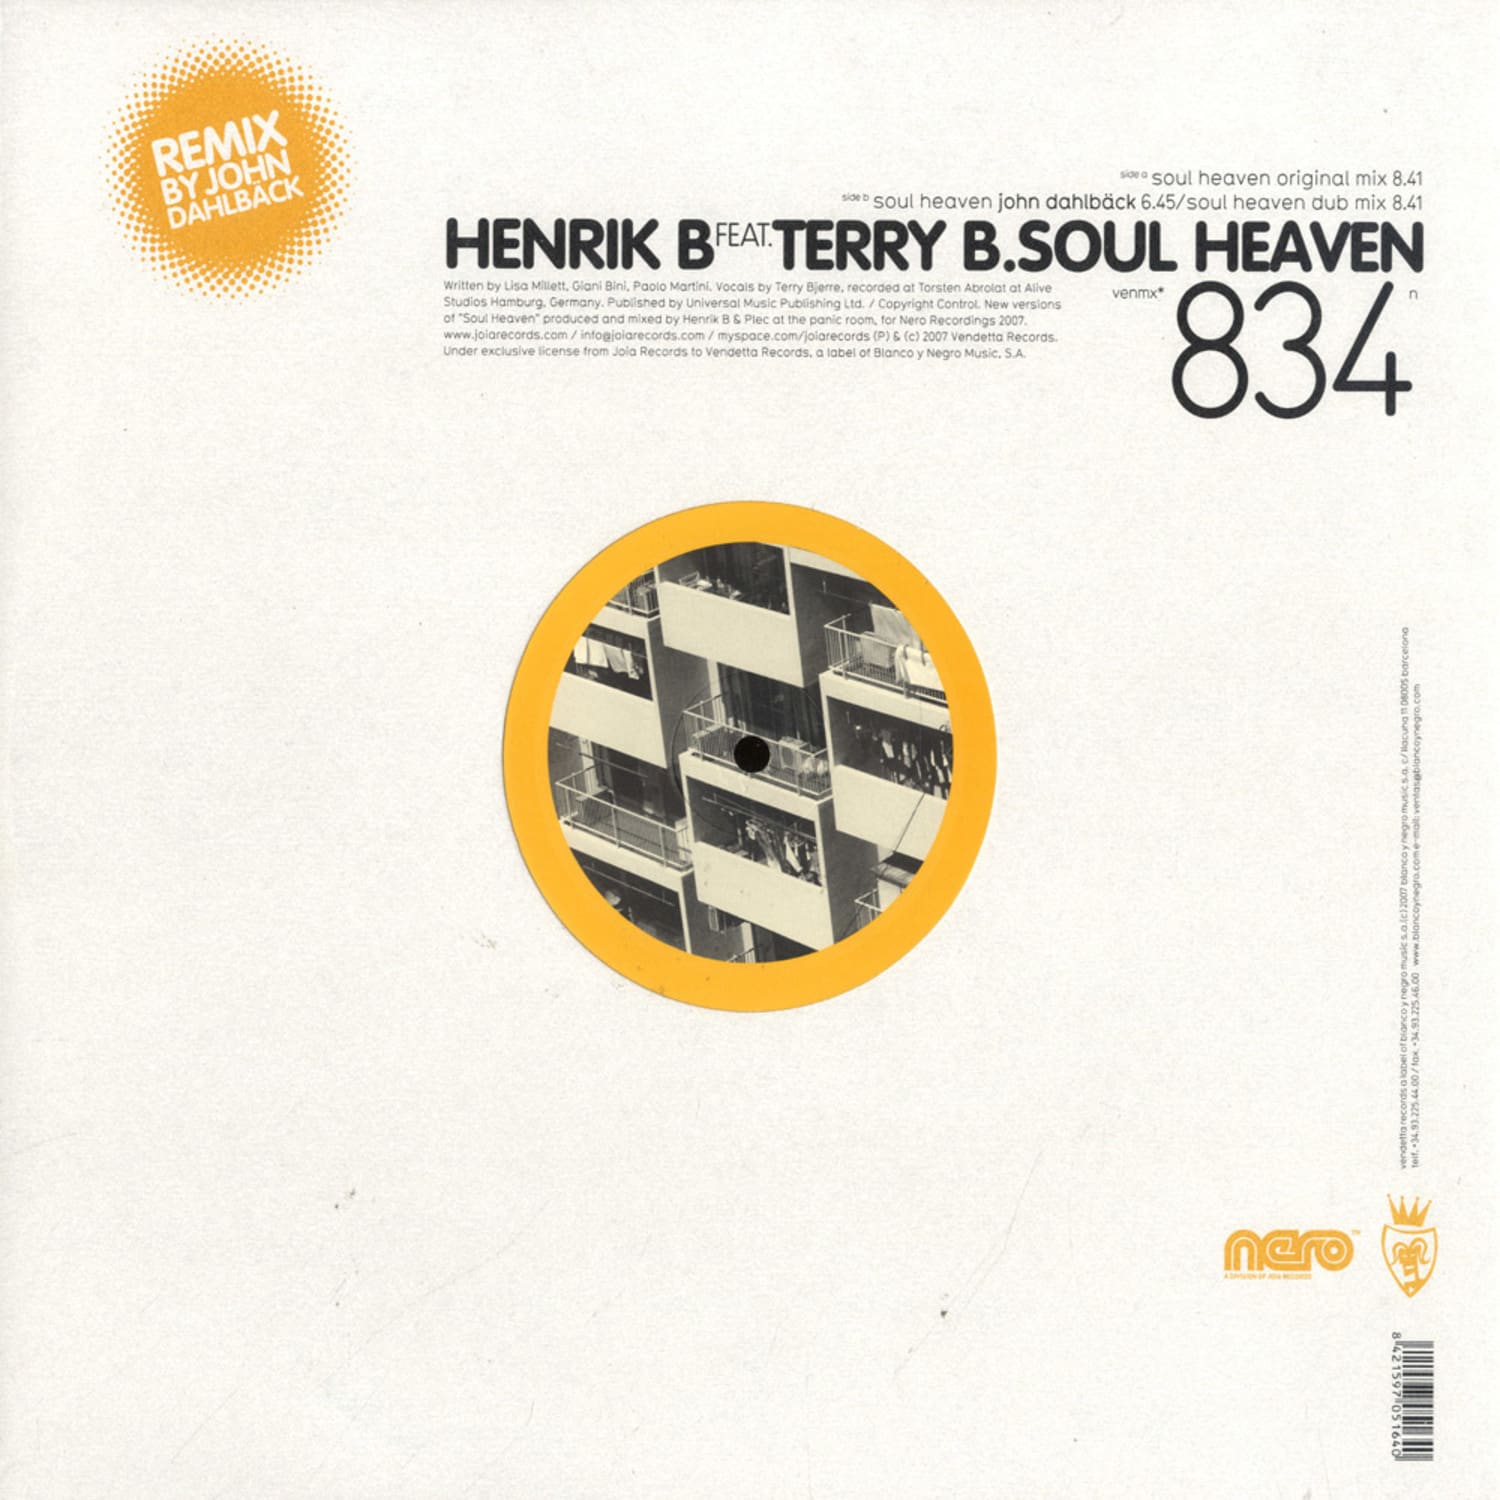 Henrik B. feat. Terry B. - SOUL HEAVEN